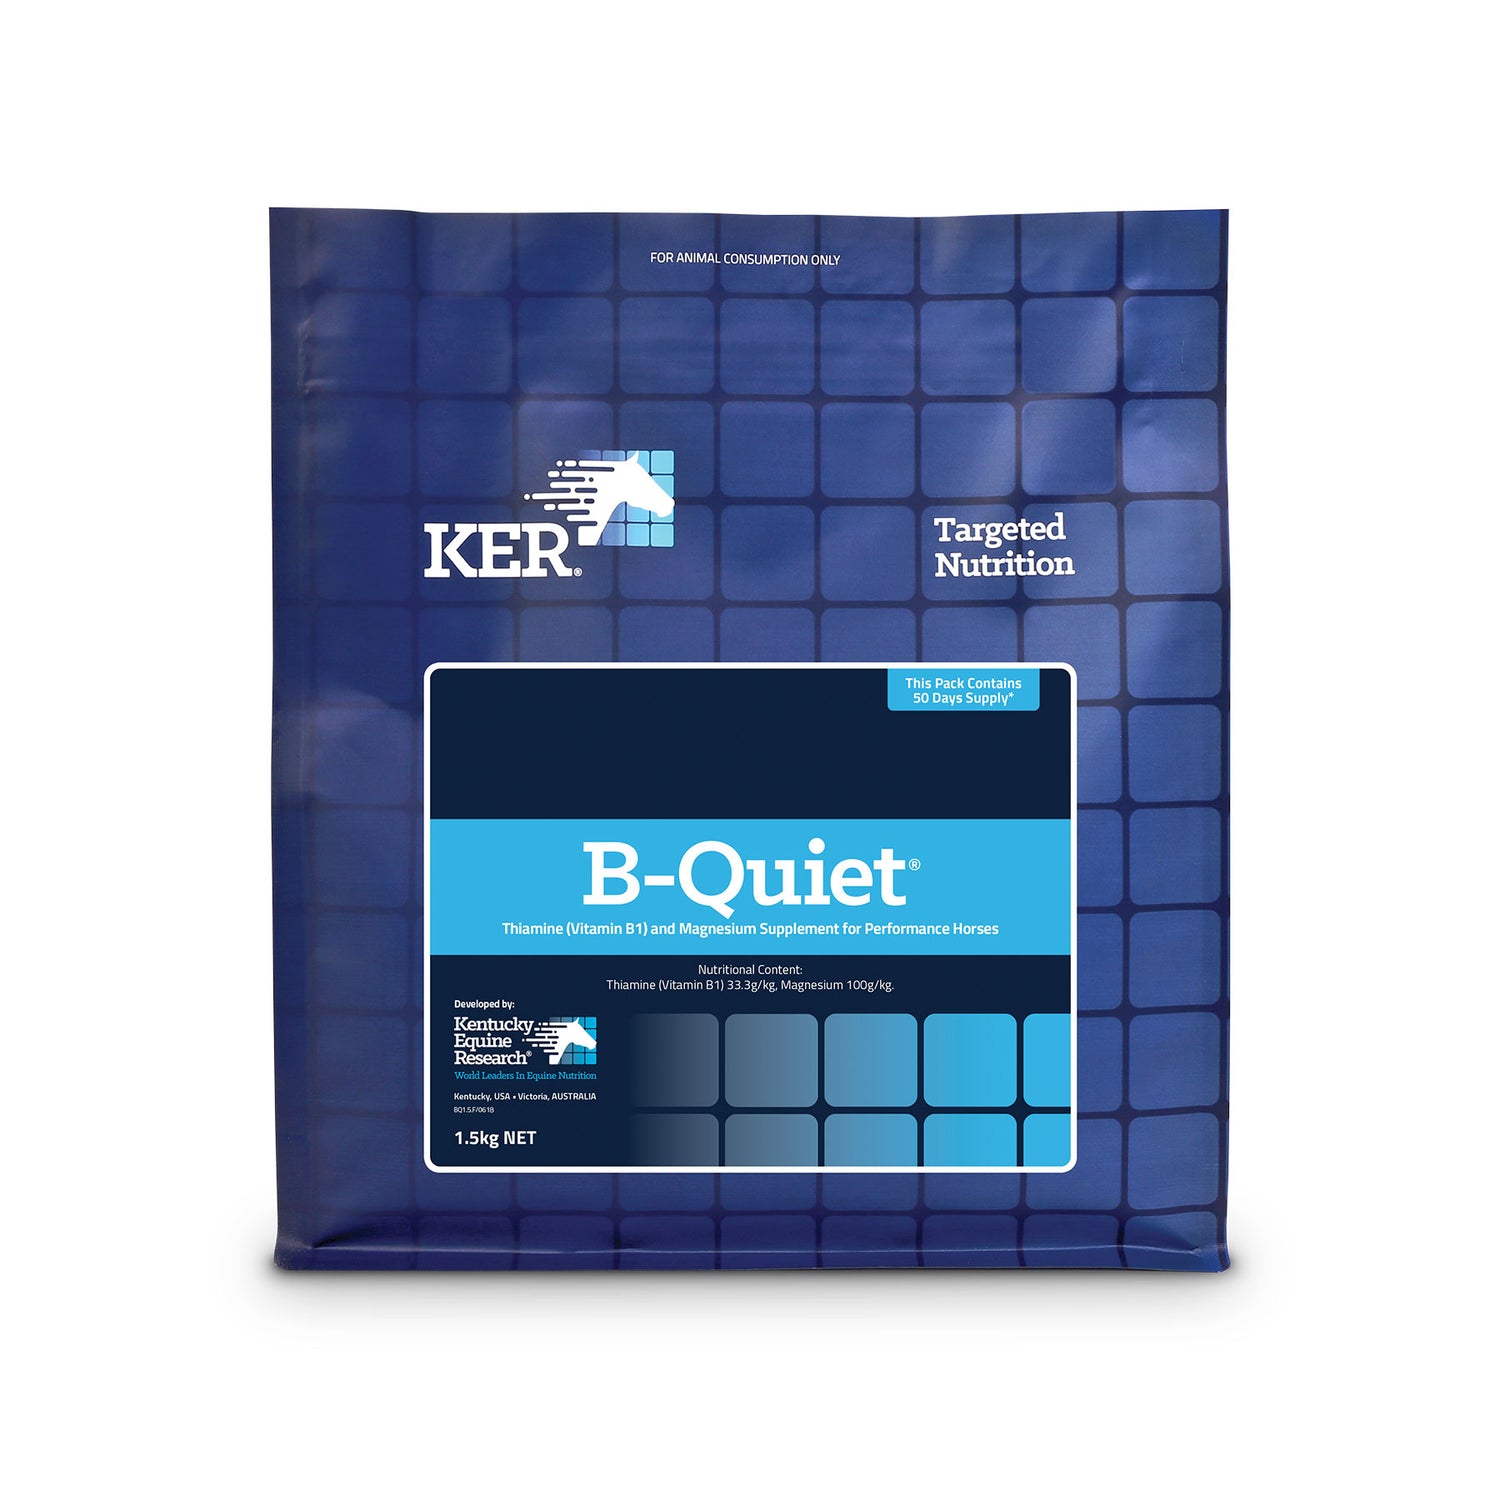 B-Quiet 1.5kg (KER)